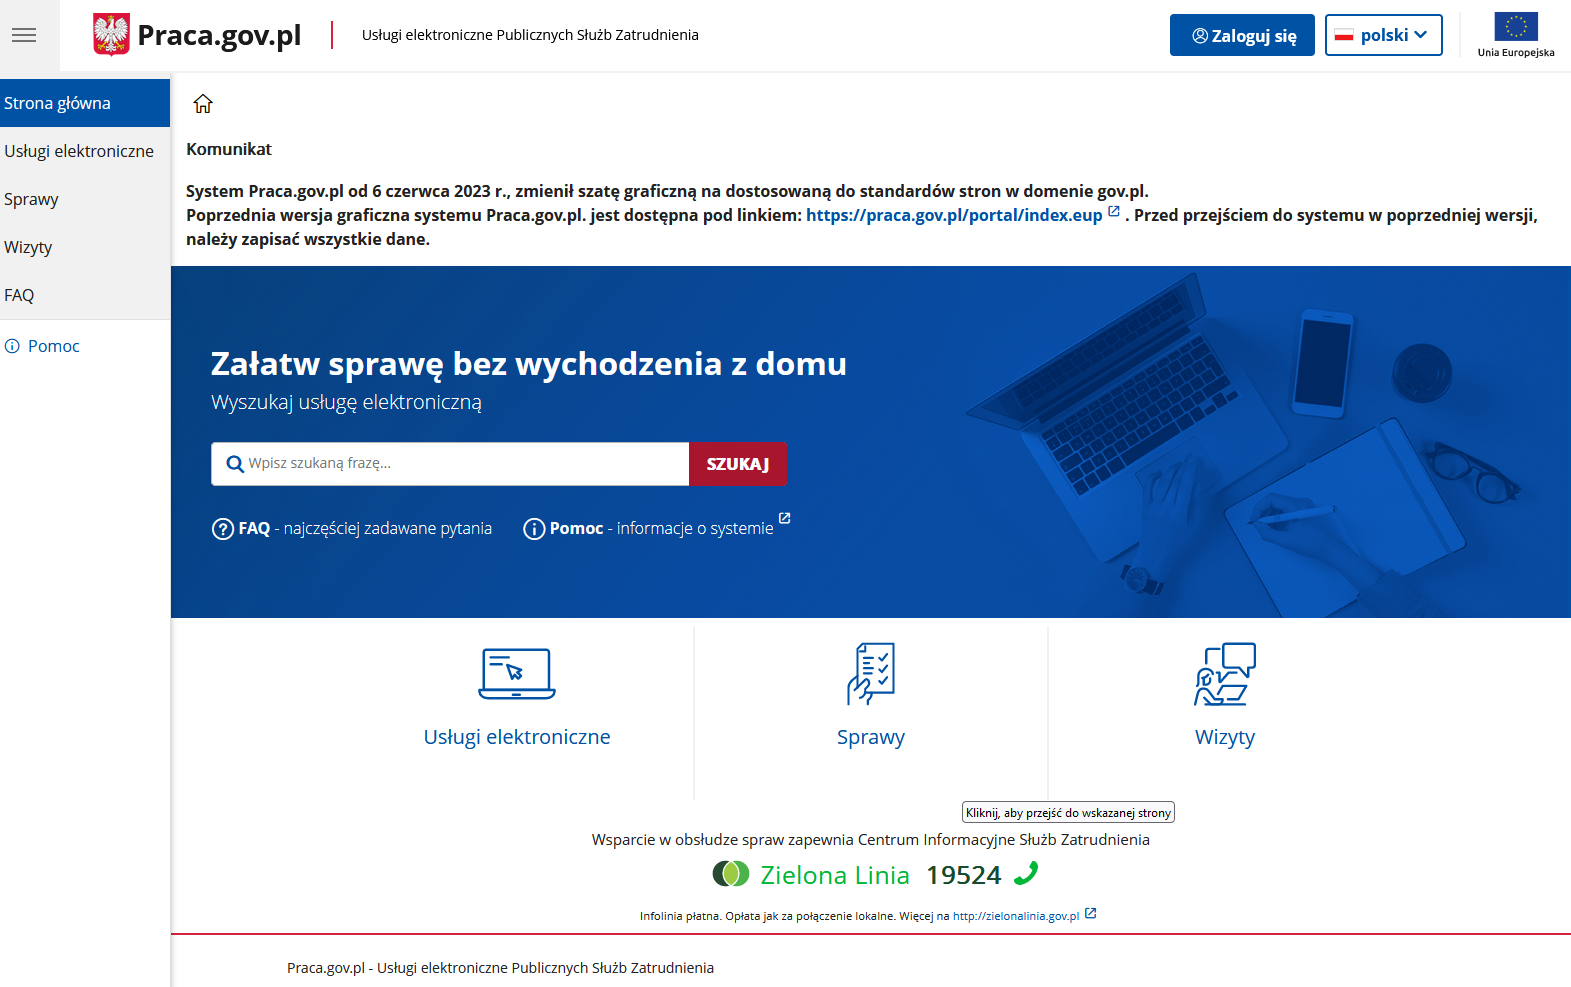 Widok strony głównej portalu Praca.gov.pl